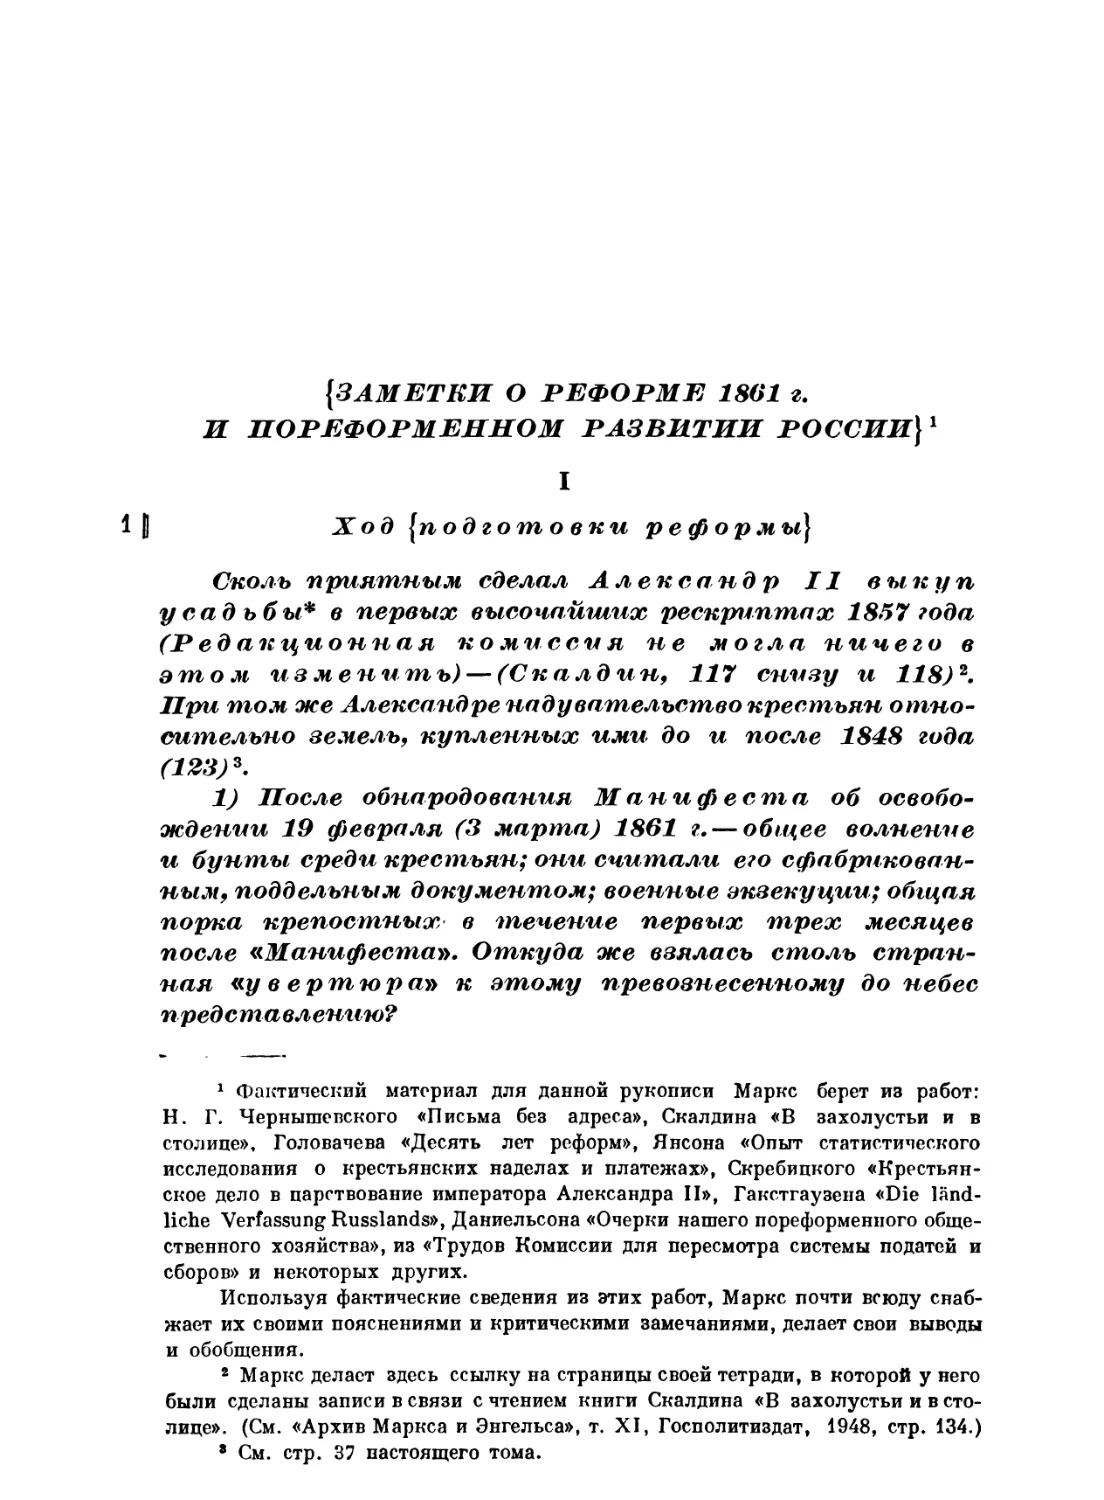 Заметки о реформе 1861 года и пореформенном развитии России